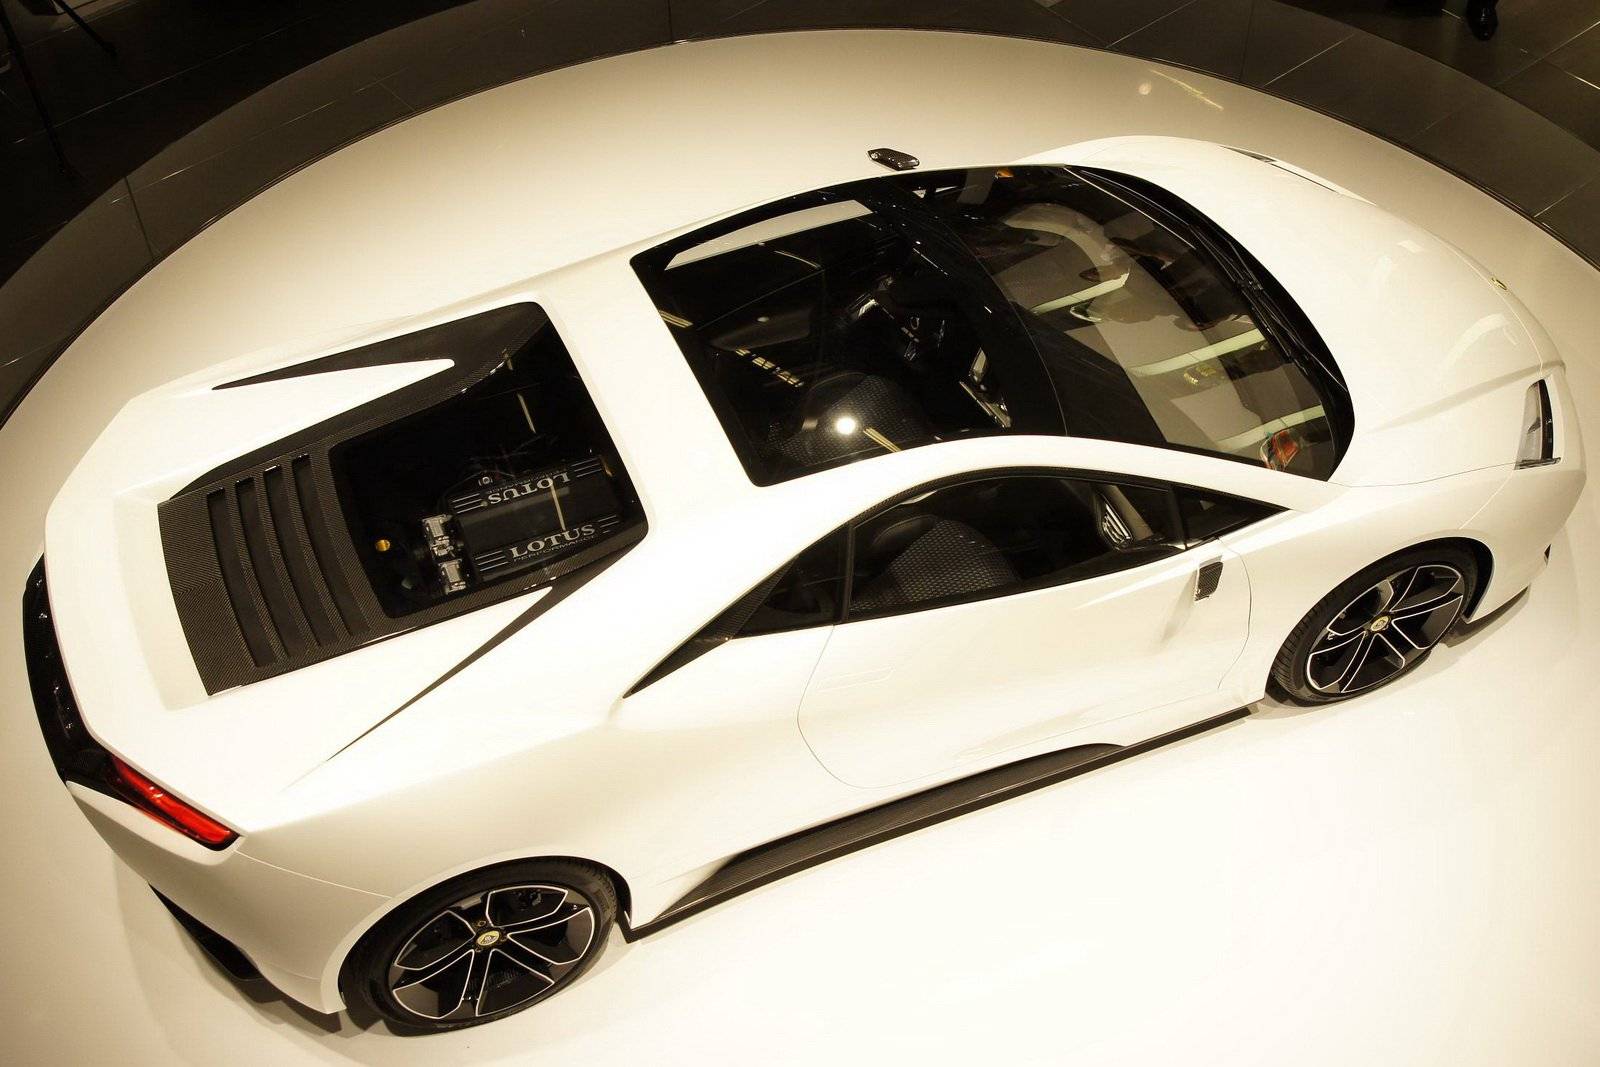 اتومبیل Lotus Omega,اخبار خودرو,خبرهای خودرو,مقایسه خودرو